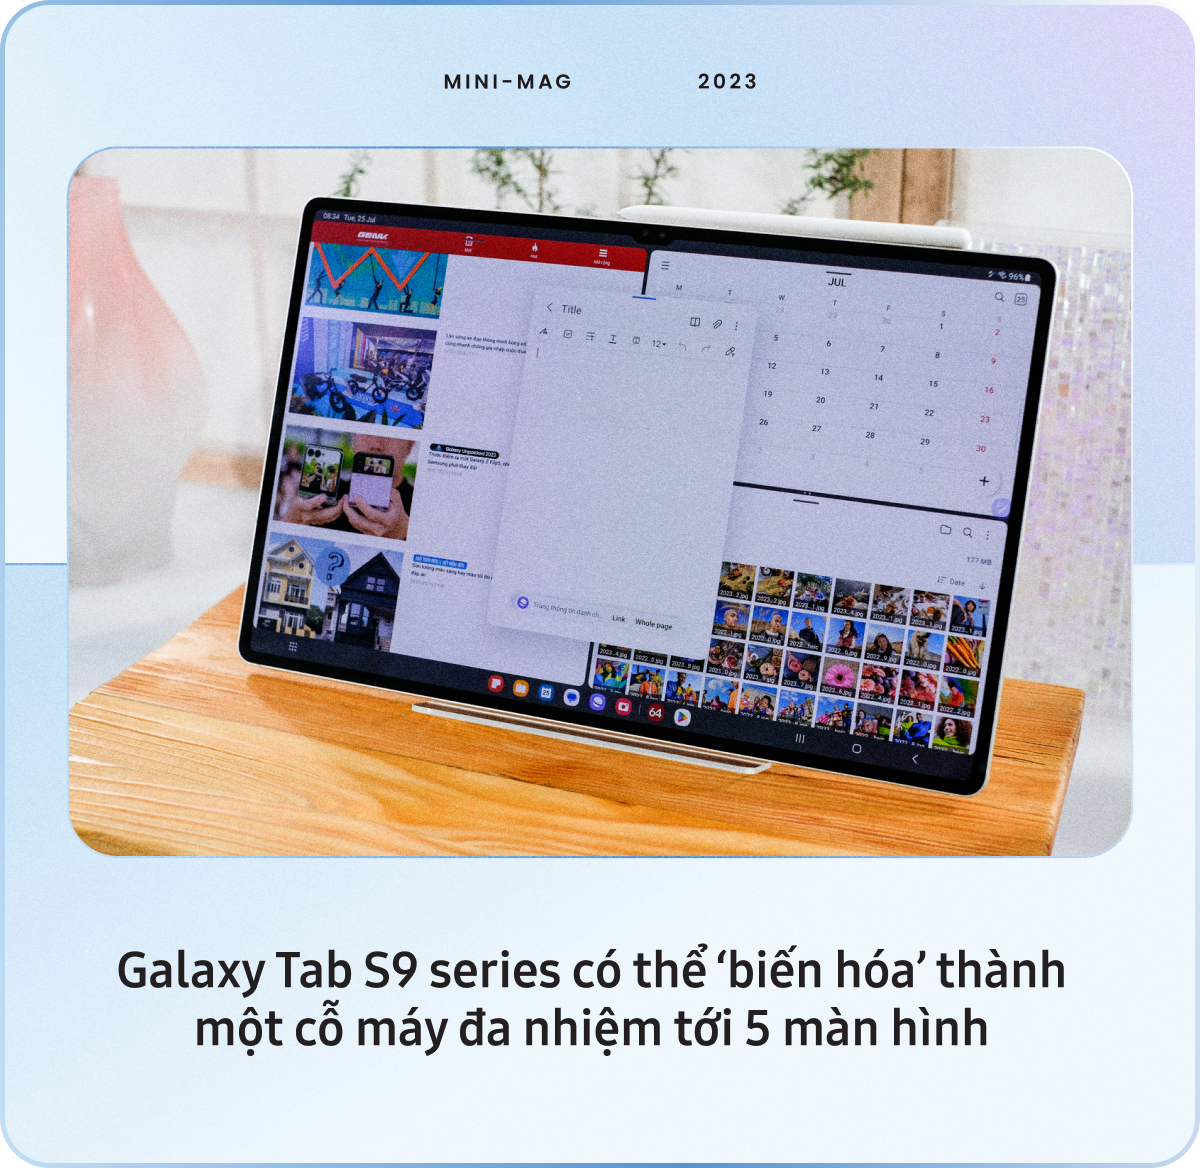 Cách Galaxy Tab S9 ‘viết lại’ tiêu chuẩn của máy tính bảng cao cấp - Ảnh 8.